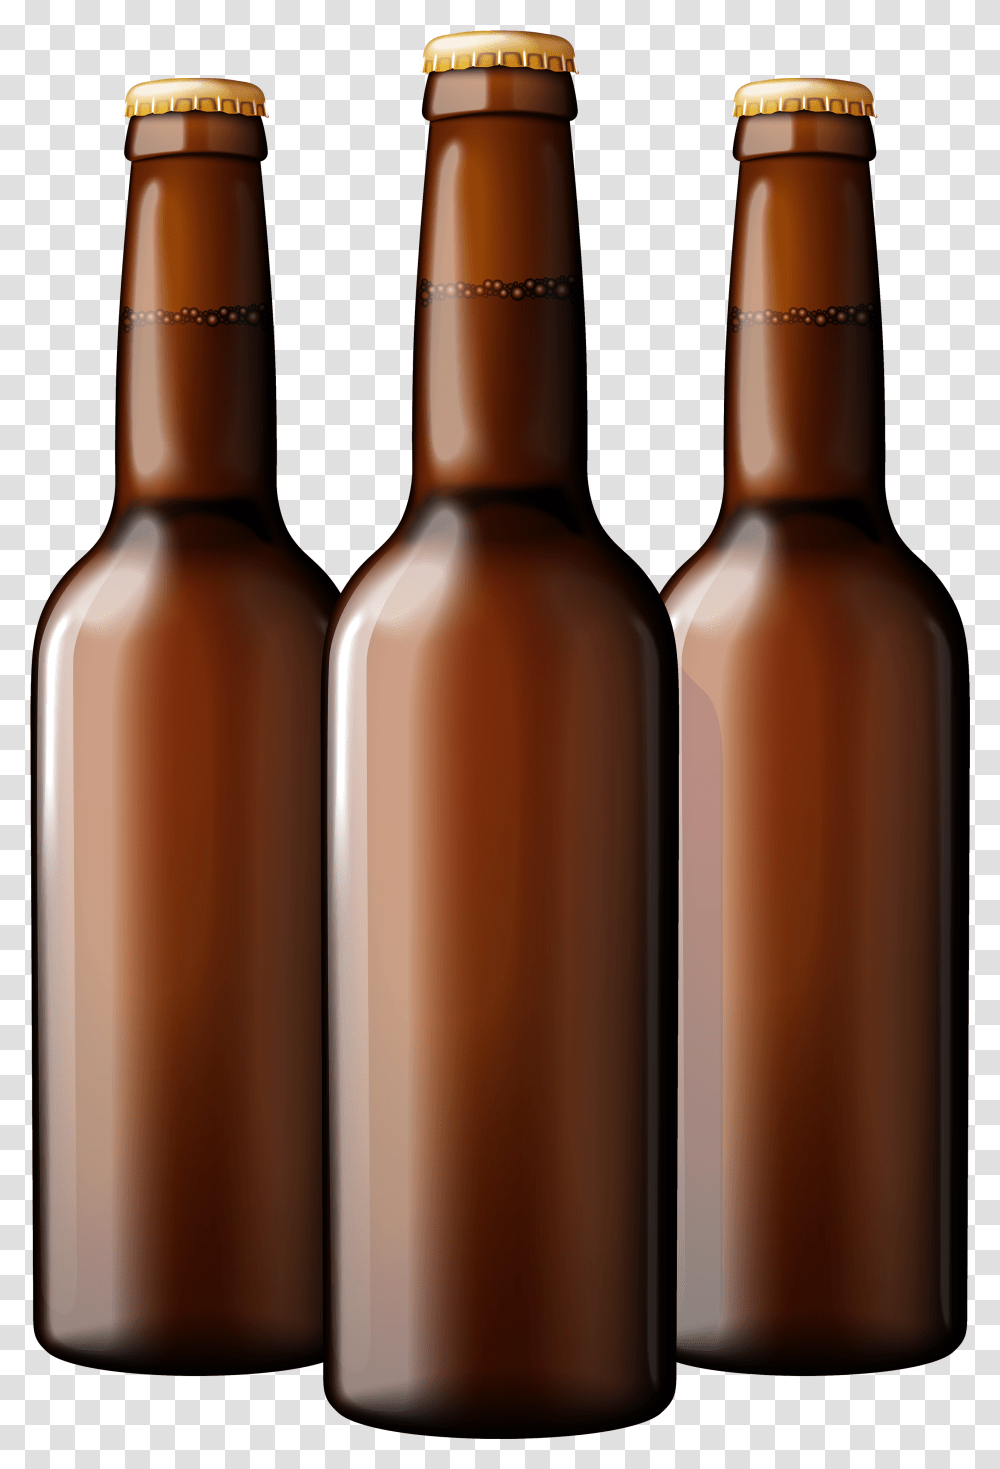 Beer Bottle Beer Bottle Clipart, Alcohol, Beverage, Drink, Wine Transparent Png